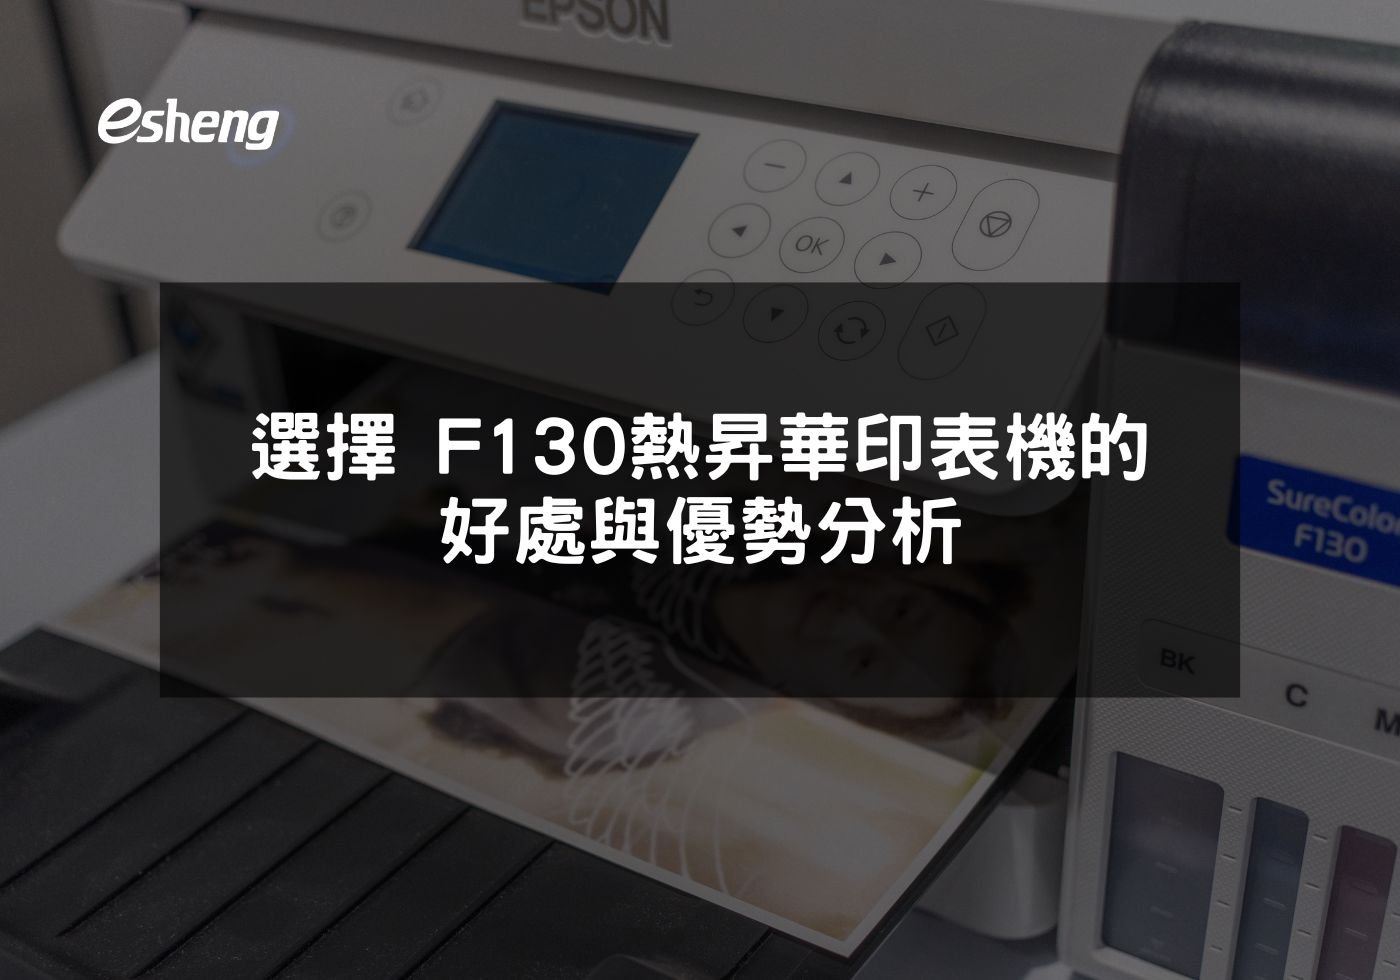 選擇EPSON F130熱昇華印表機的好處與優勢分析